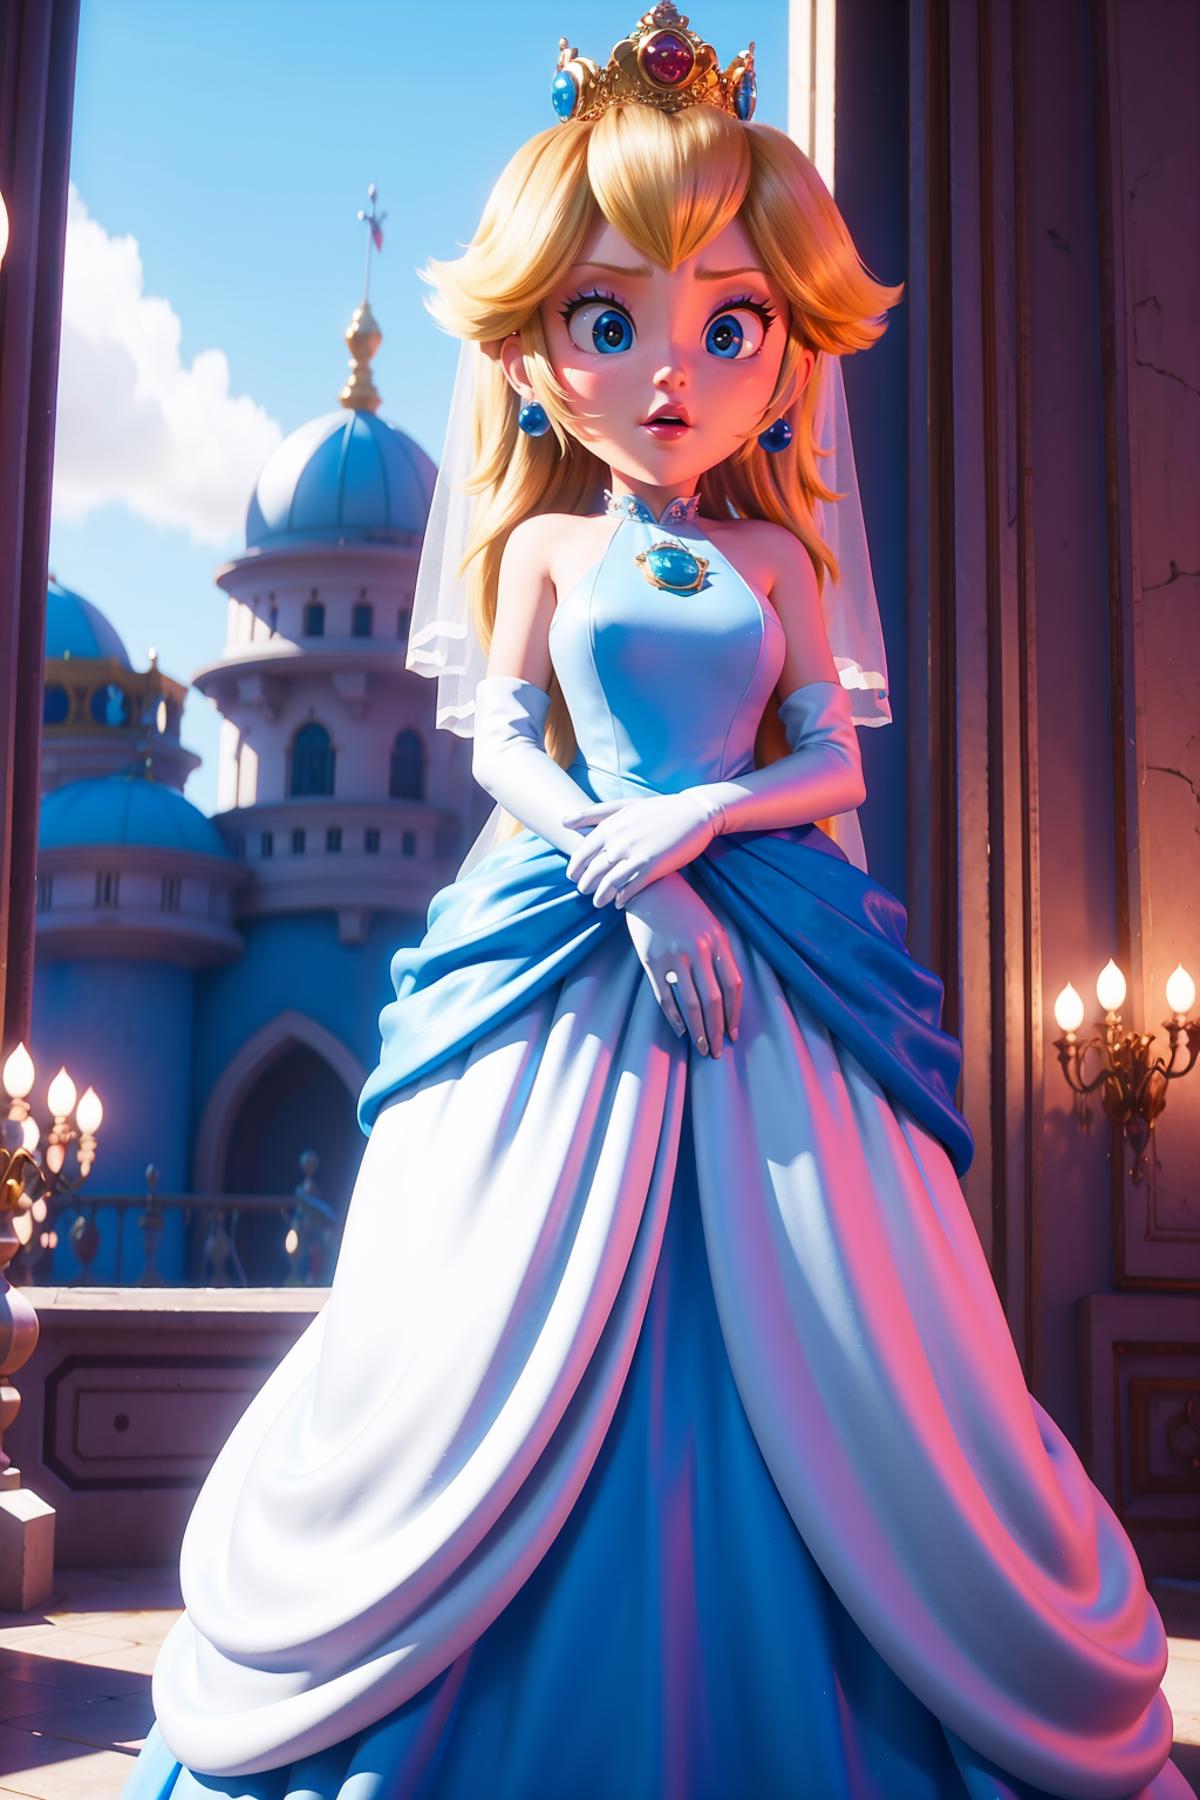 princess peach - The Super Mario Bros. Movie - movie like image by shadowrui